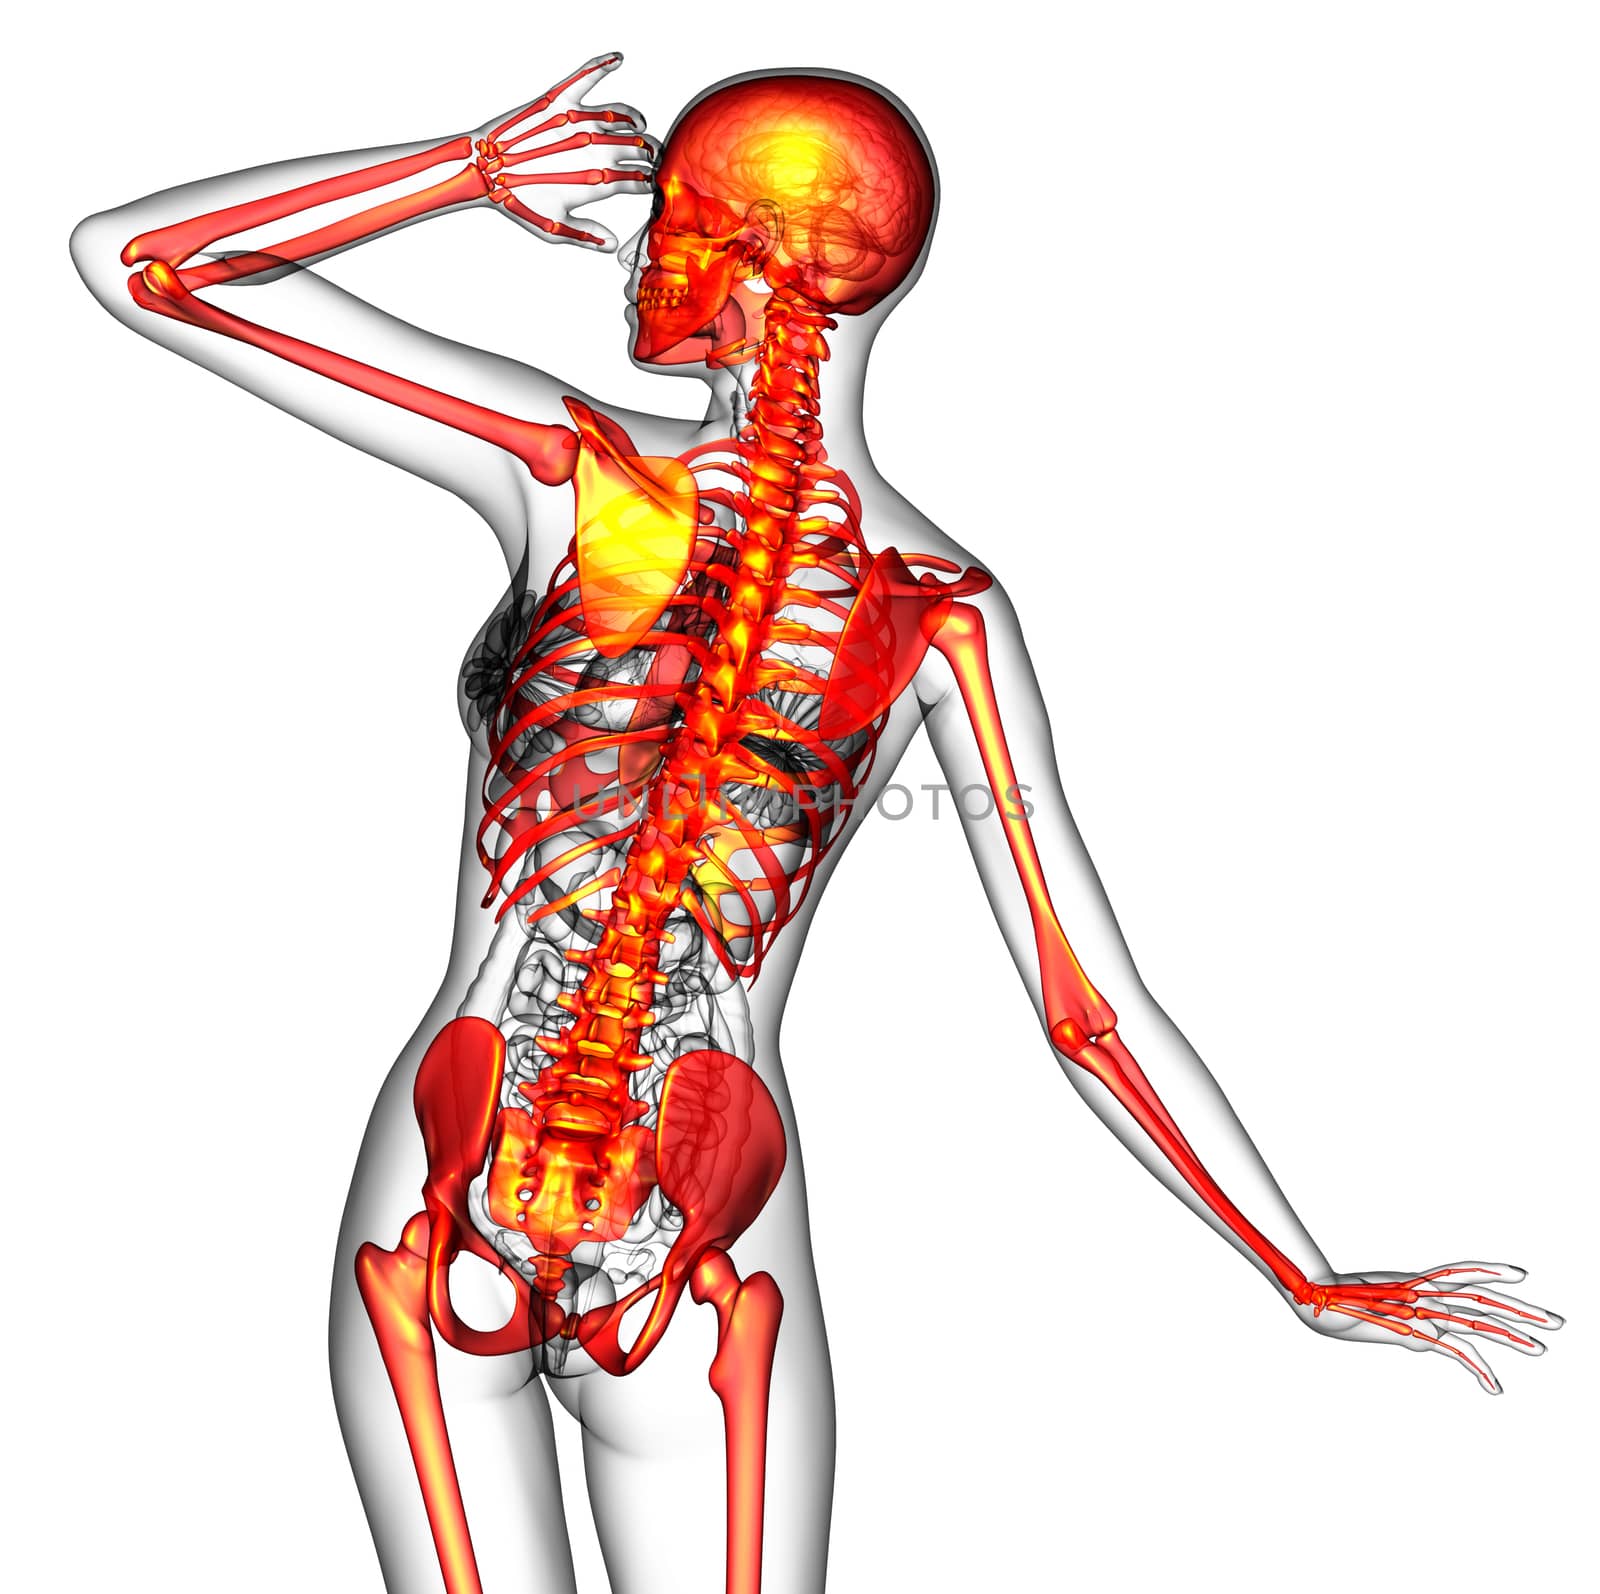 3D medical illustration of the human skeleton - back view